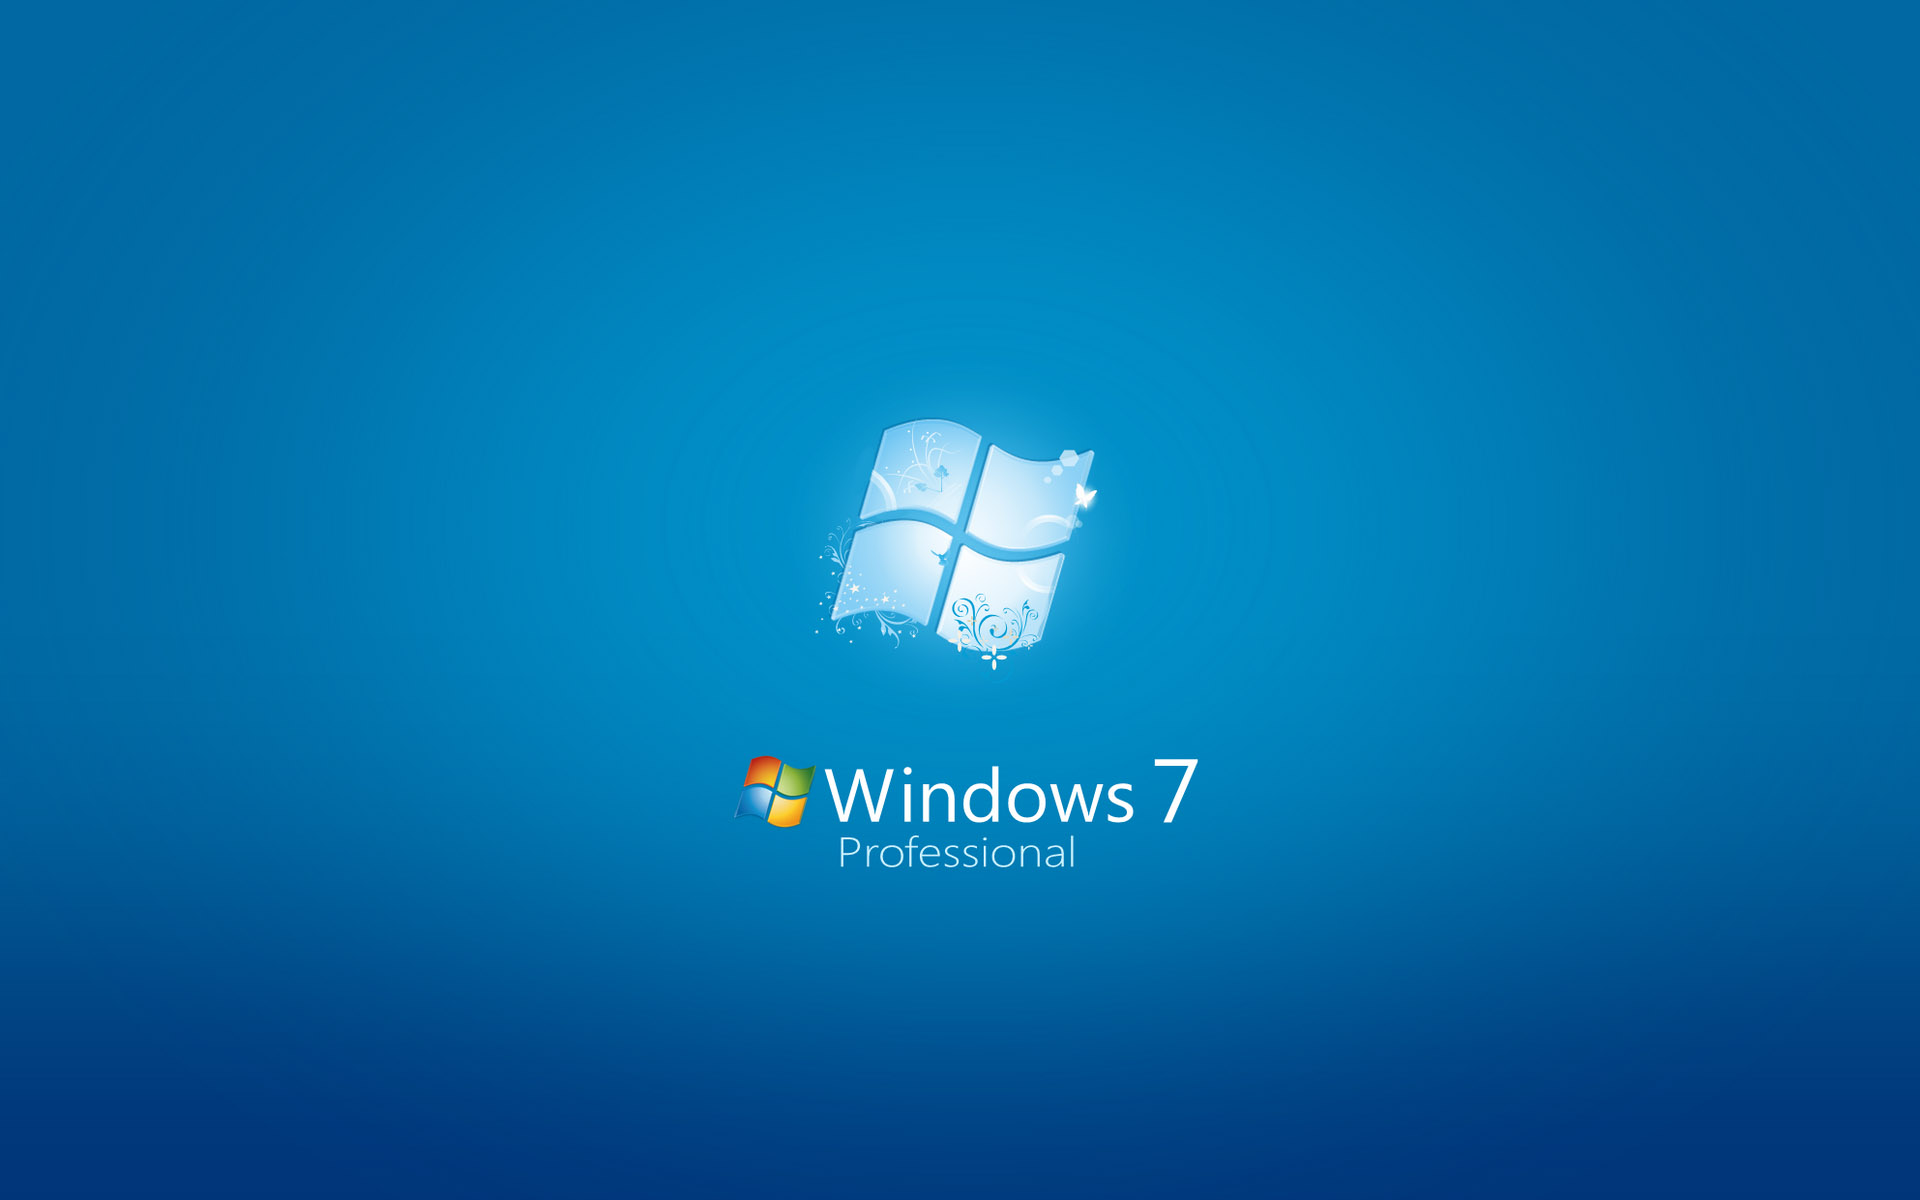 壁纸1920x1200Windows 7 正式版壁纸壁纸 Windows 7 正式版壁纸壁纸 Windows 7 正式版壁纸图片 Windows 7 正式版壁纸素材 其他壁纸 其他图库 其他图片素材桌面壁纸